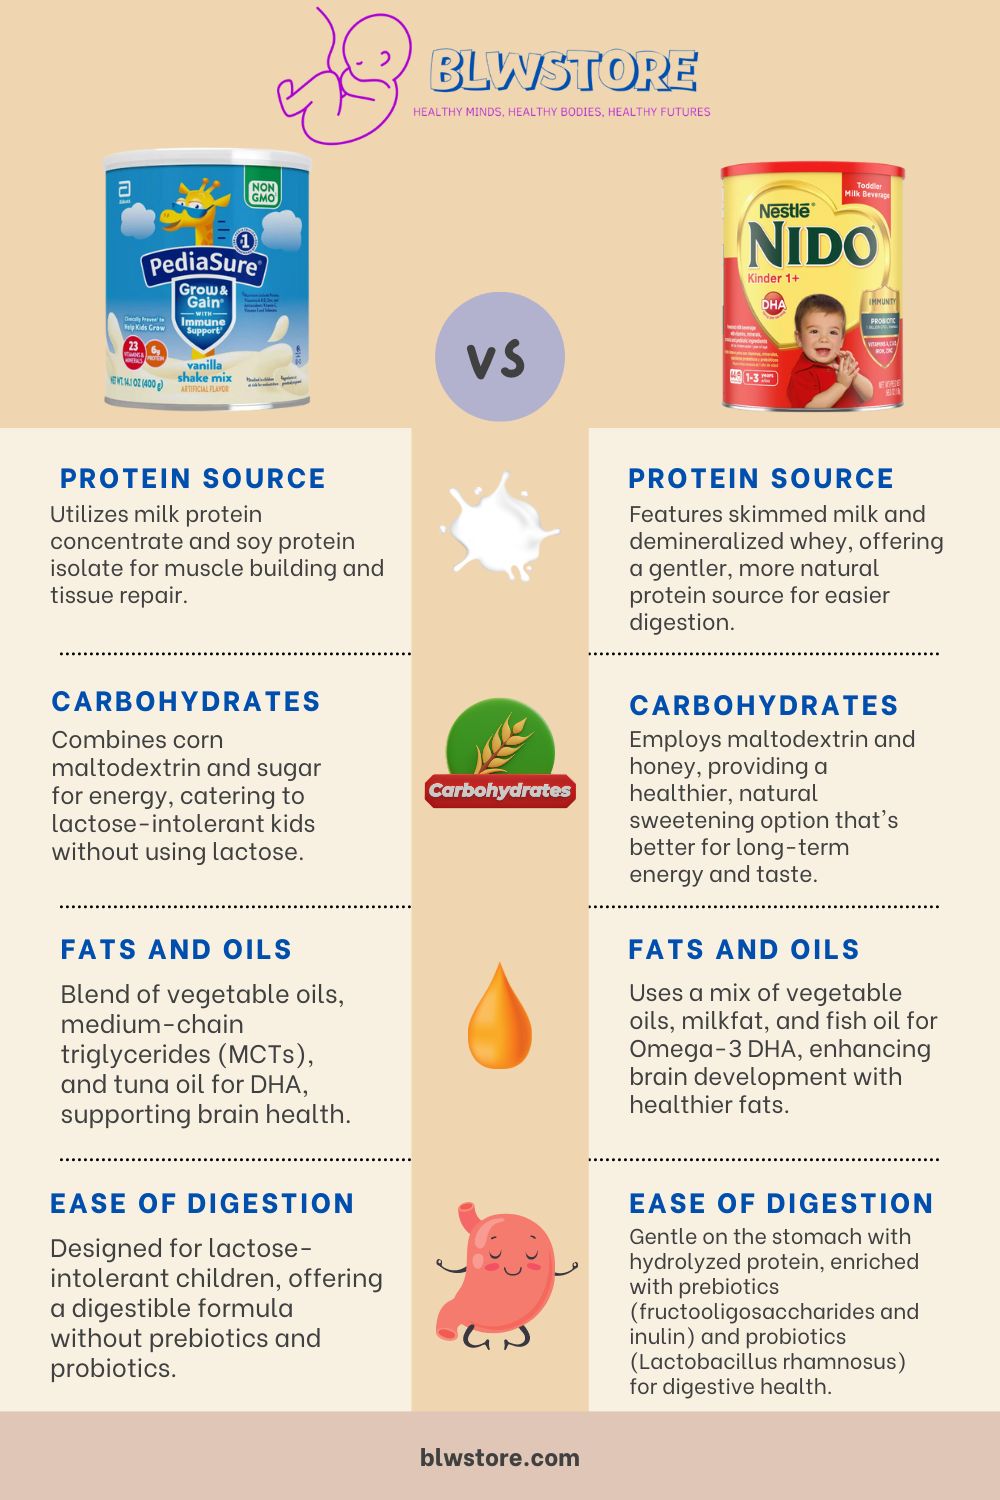 Pediasure vs NIDO Nestlé Infographic